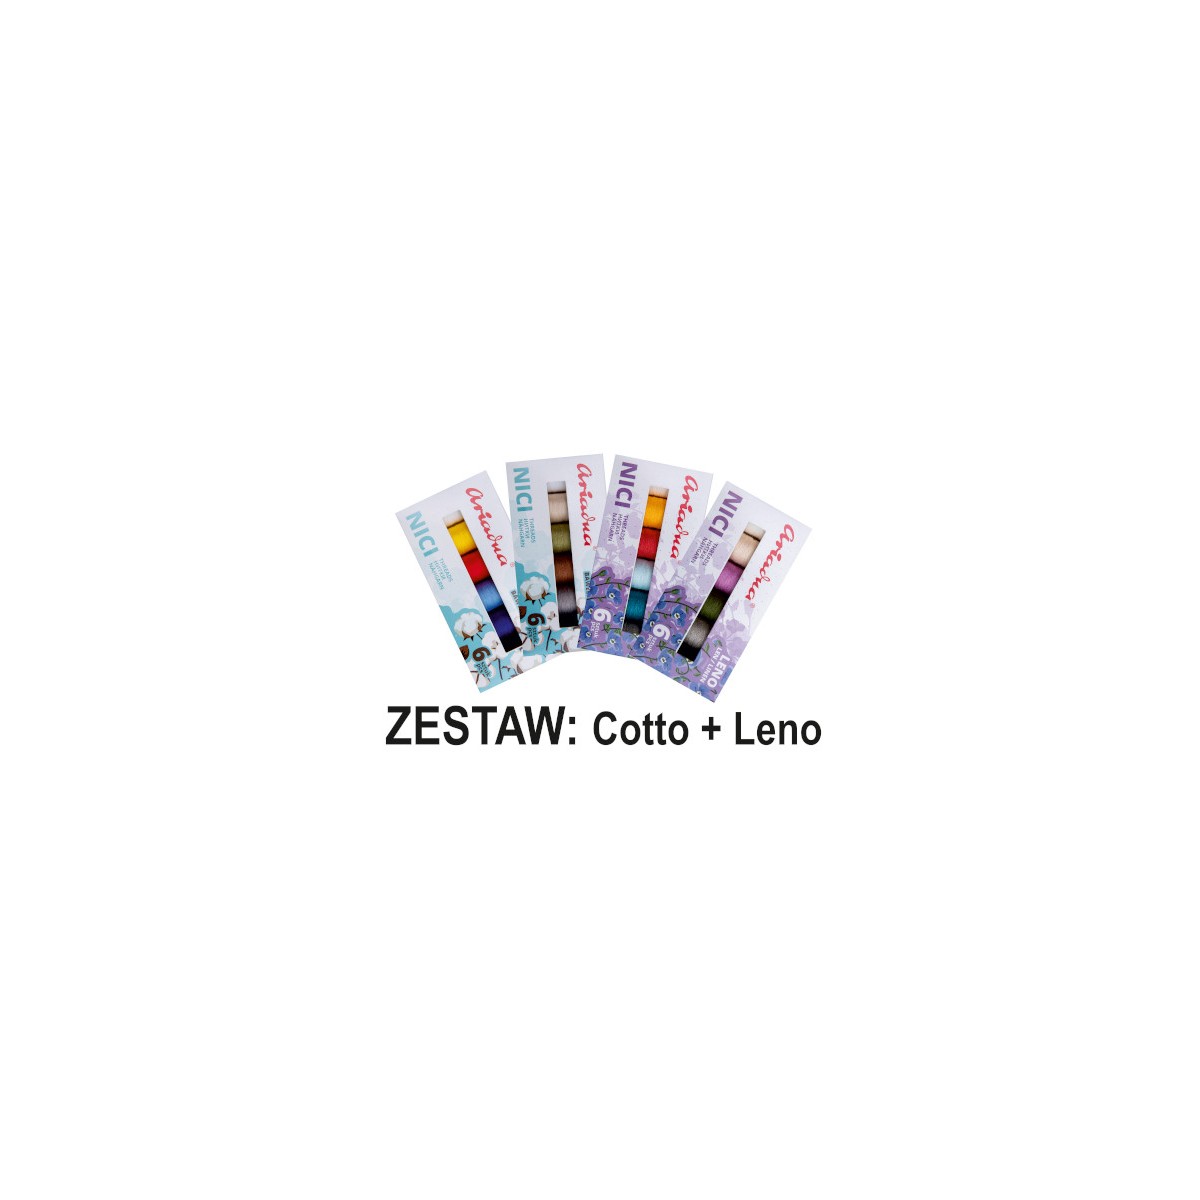 Zestaw - Cotto + Leno